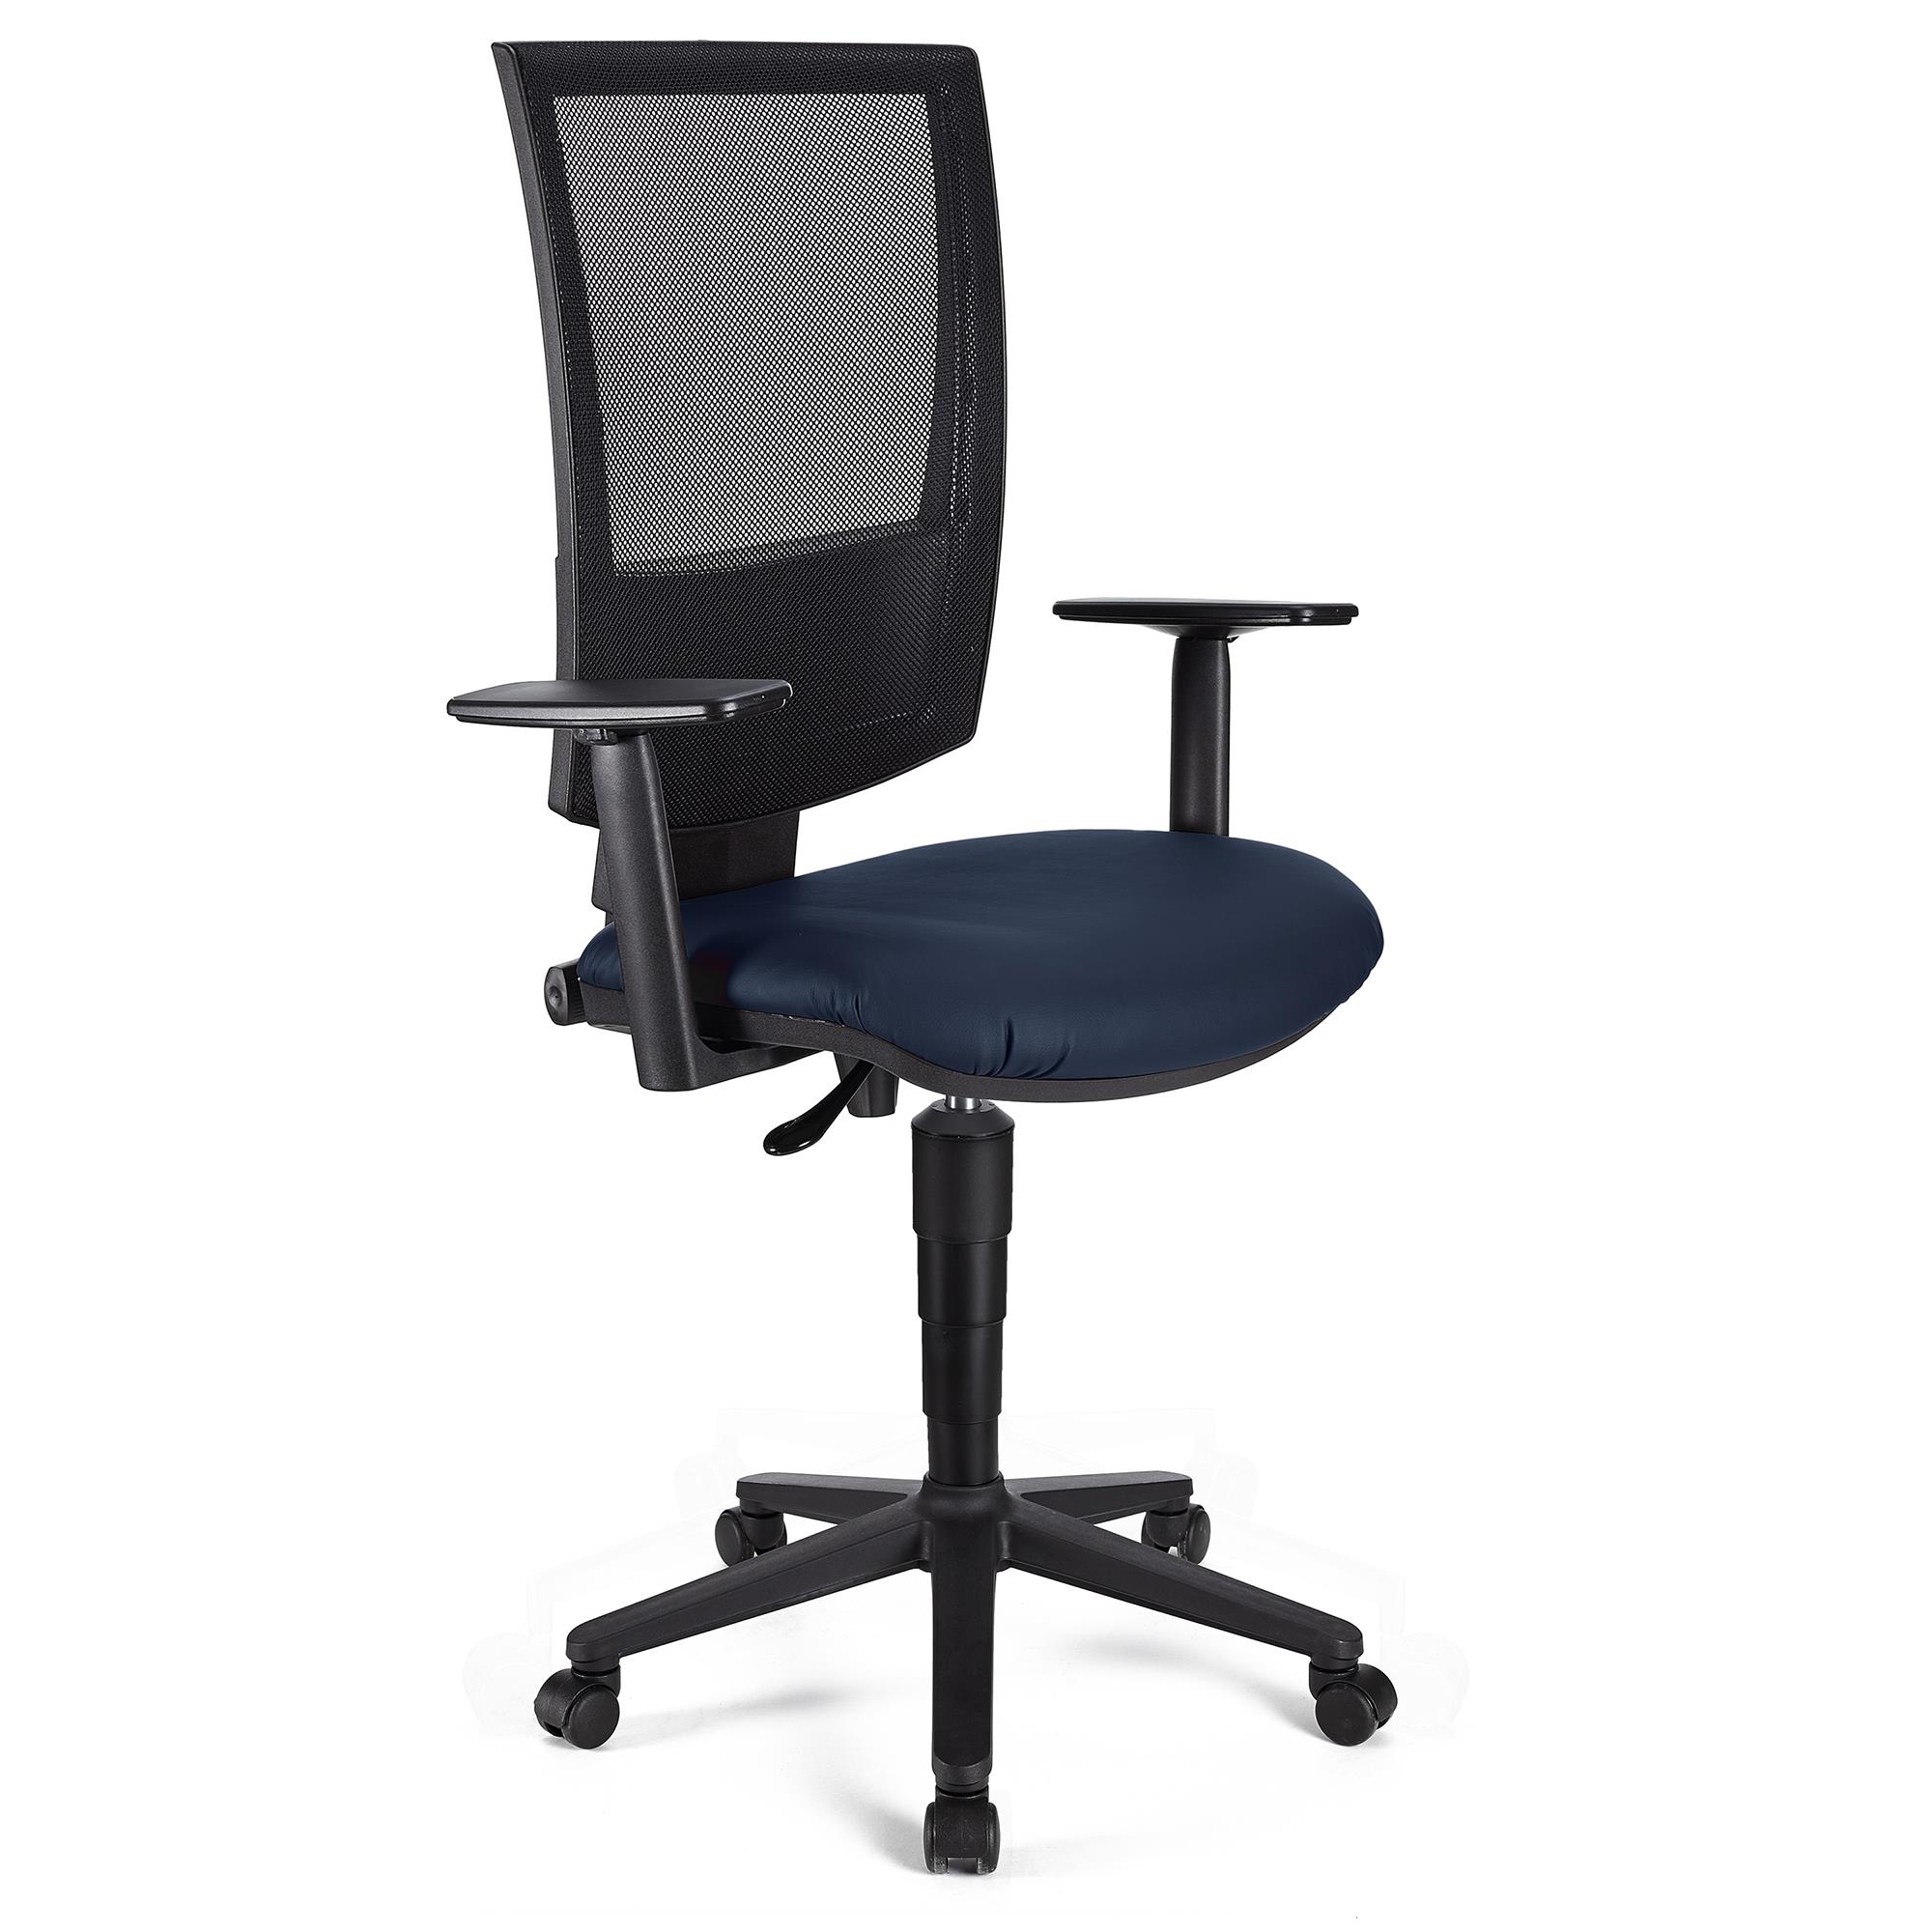 Bürostuhl PANDORA PLUS LEDER mit verstellbaren Armlehnen, Rückenlehne mit Netzbezug, dicke Polsterung, Farbe Blau